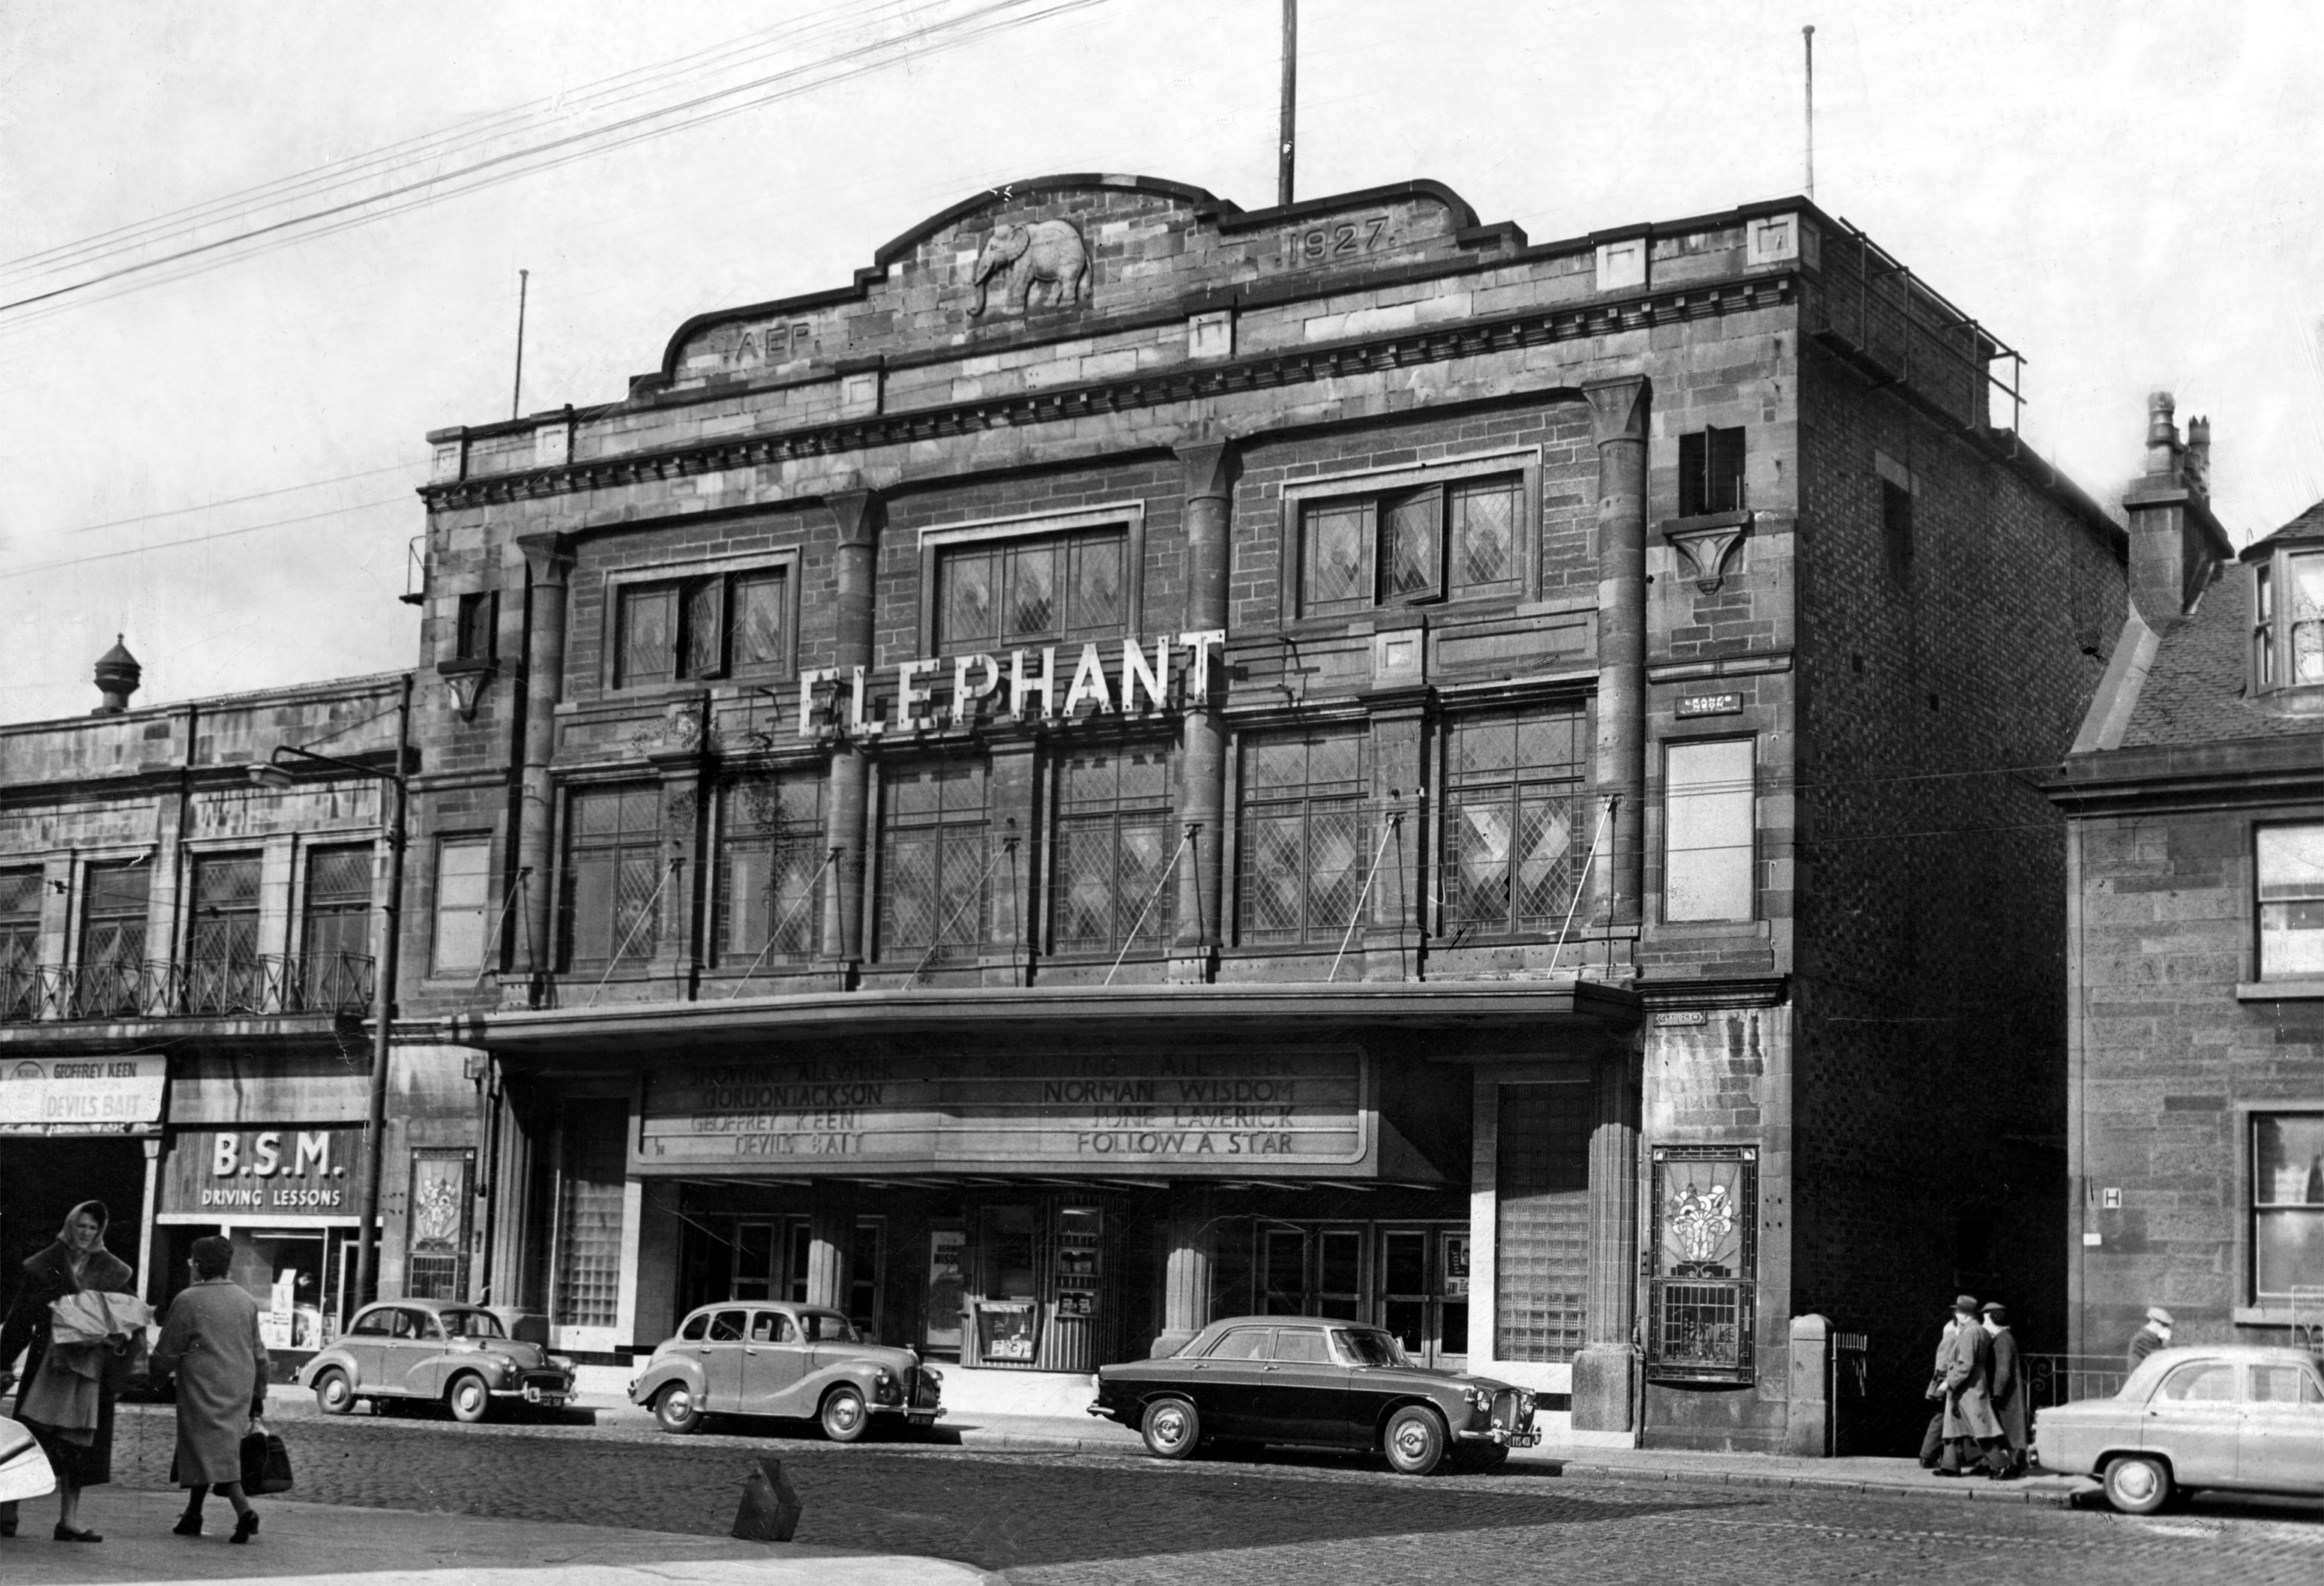 Elephant Cinema in Glasgow